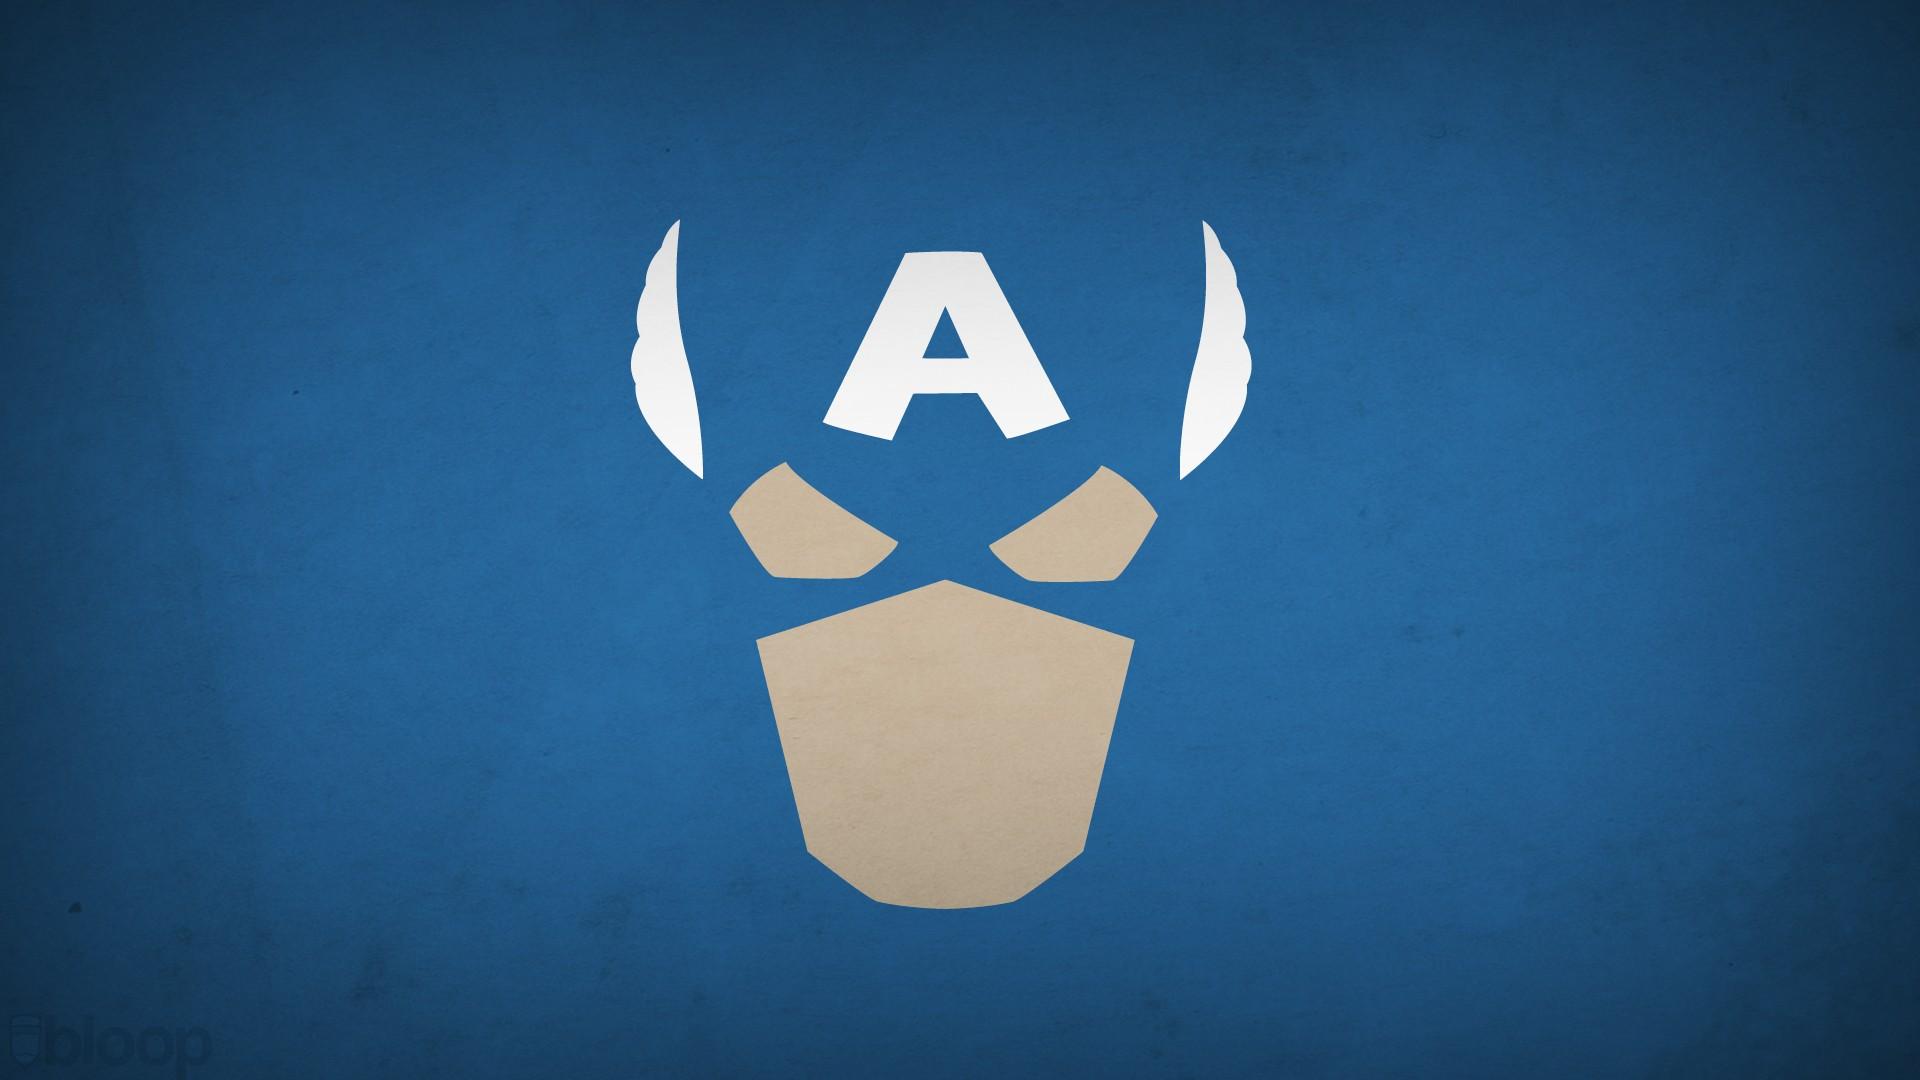 Marvel Logo Wallpaper. 2048x1152 Marvel Studios